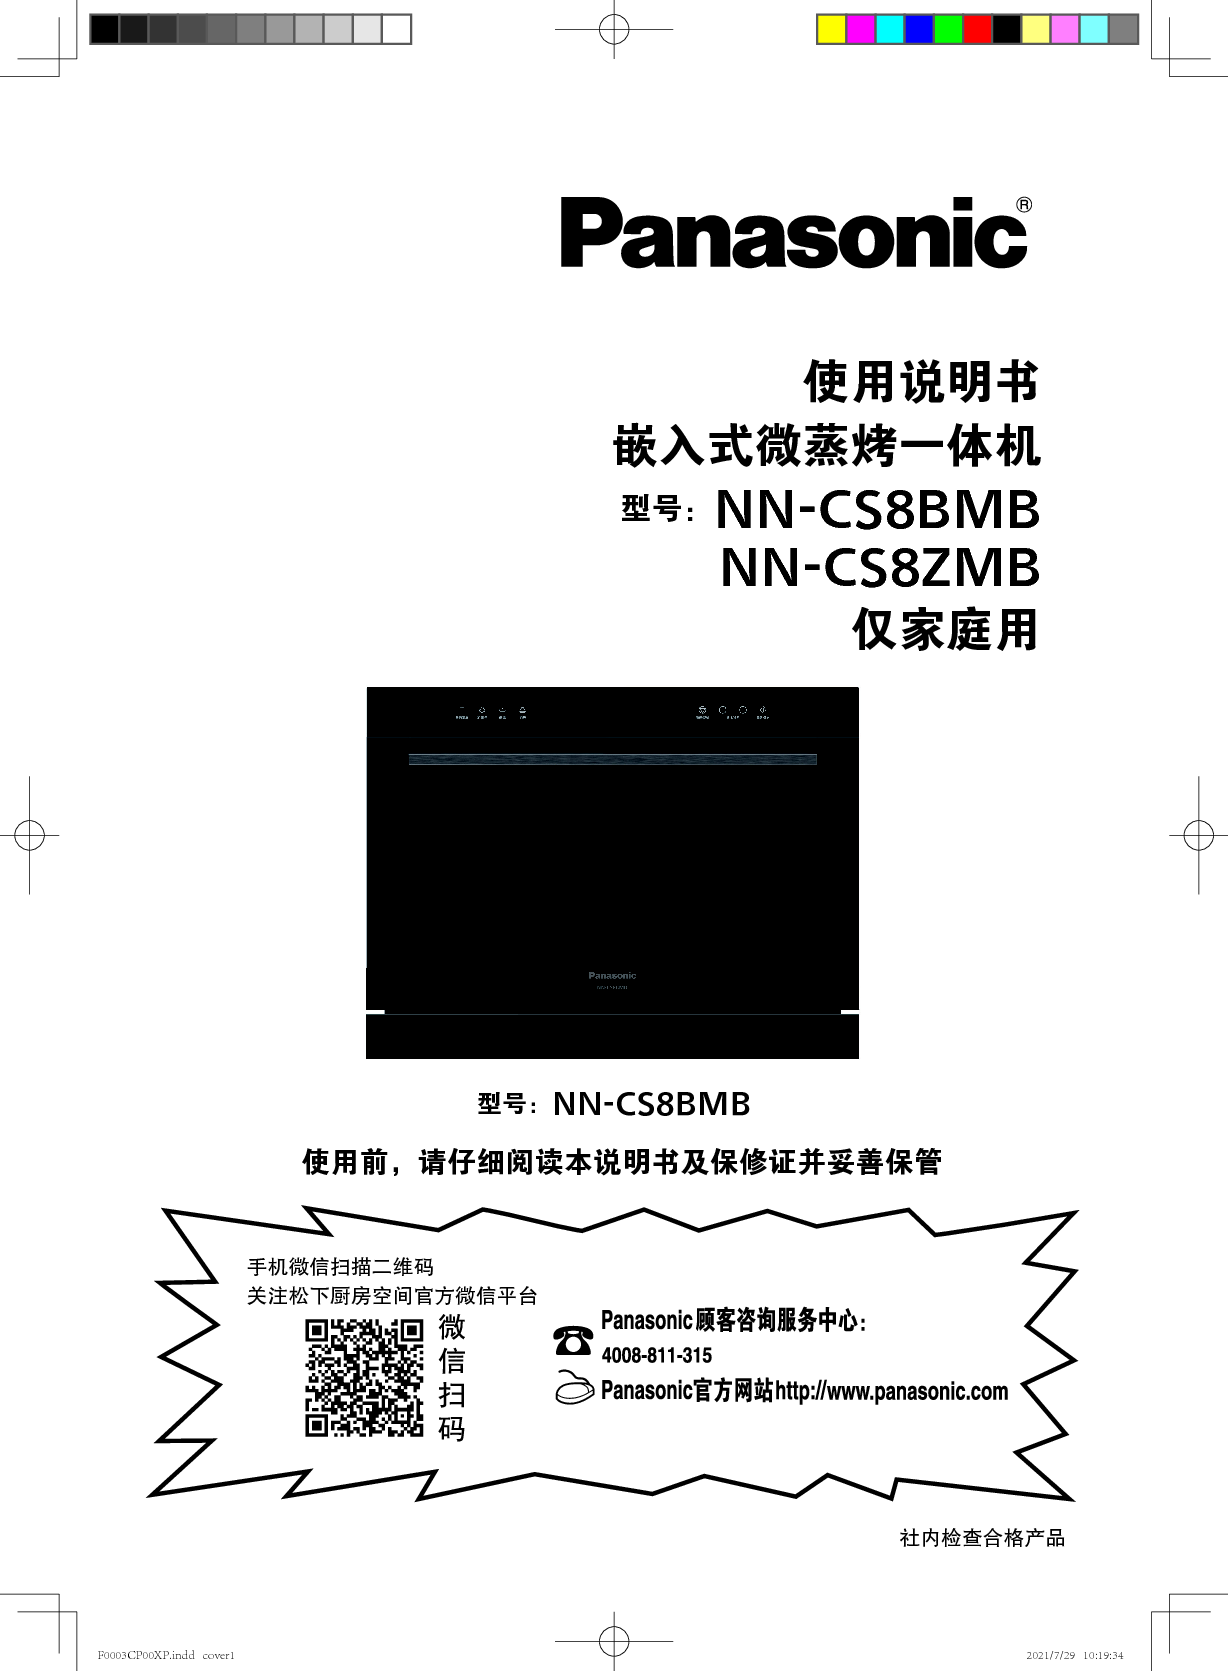 松下 Panasonic NN-CS8BMB 使用说明书 封面